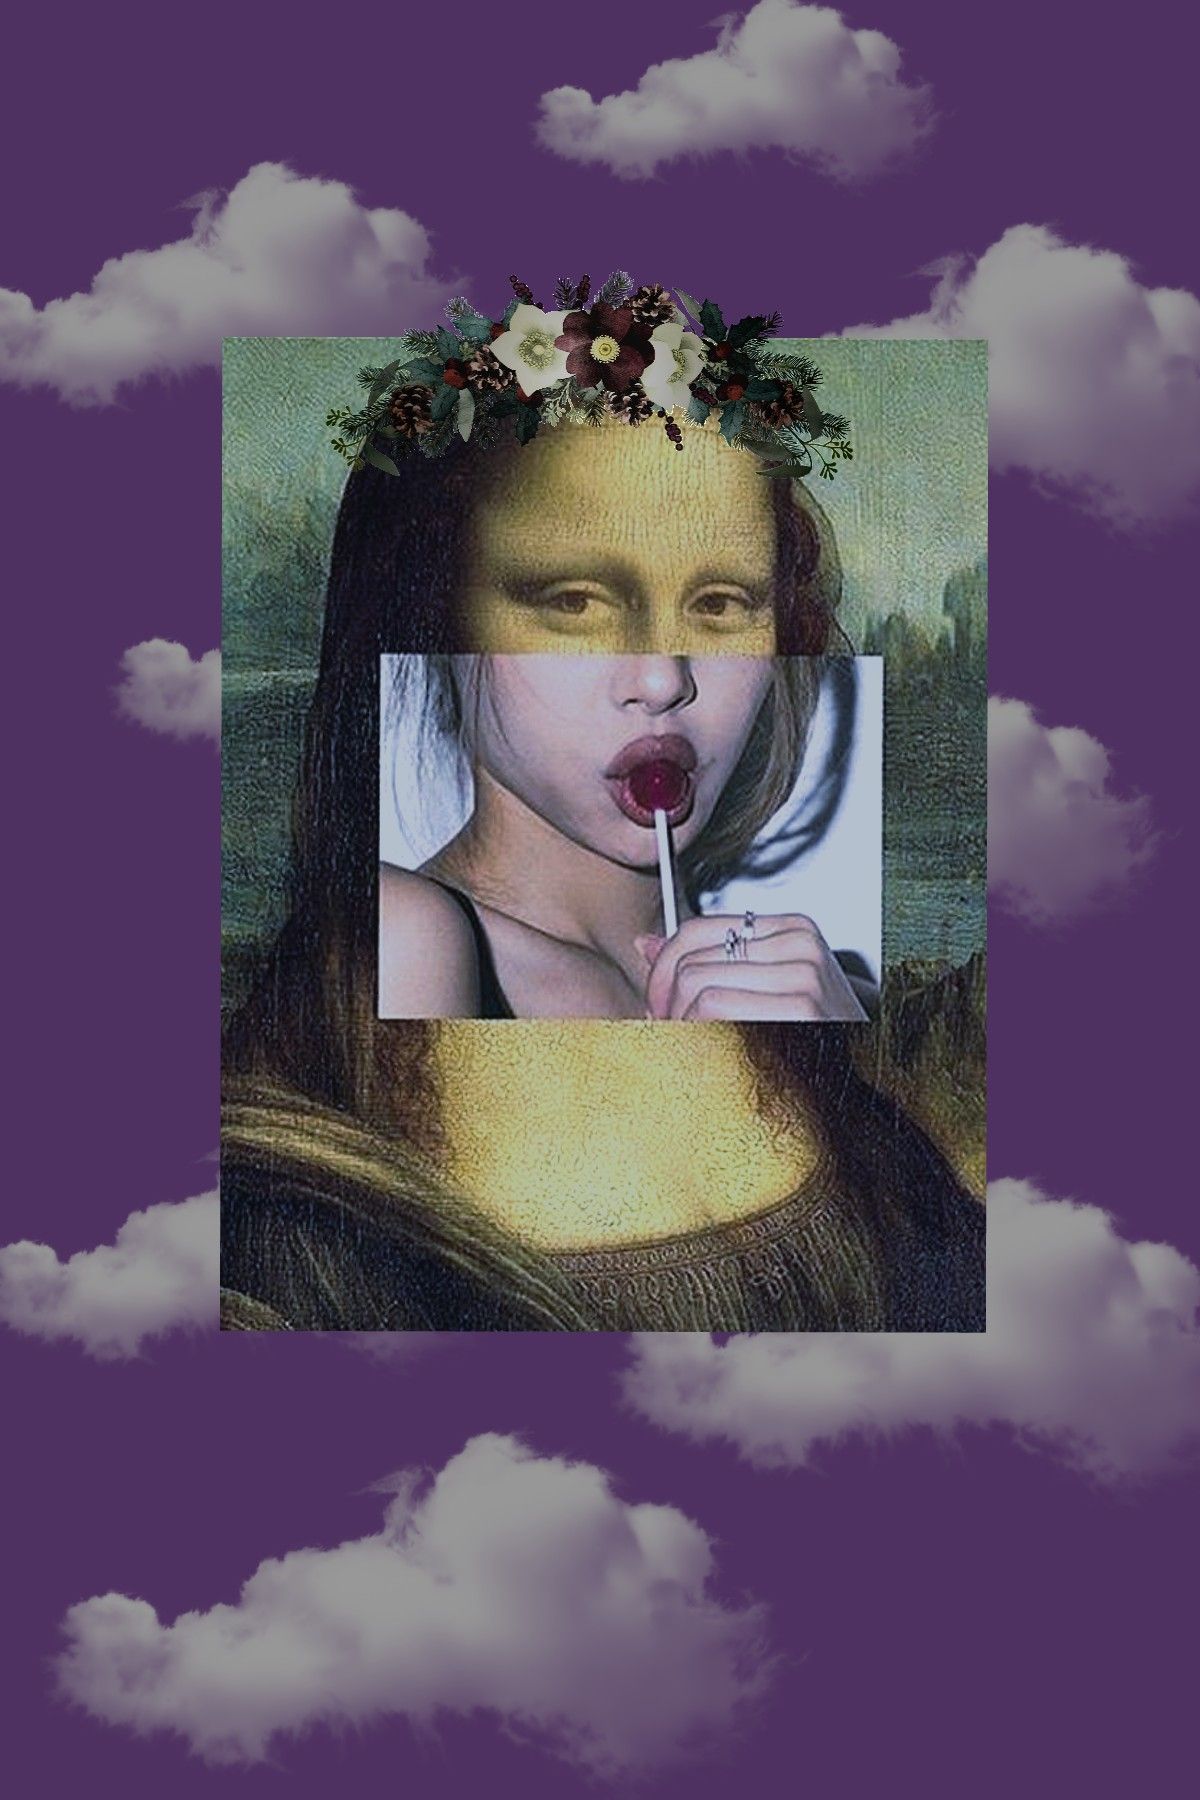 An artistic version of the Mona Lisa eating a lollipop. - Mona Lisa